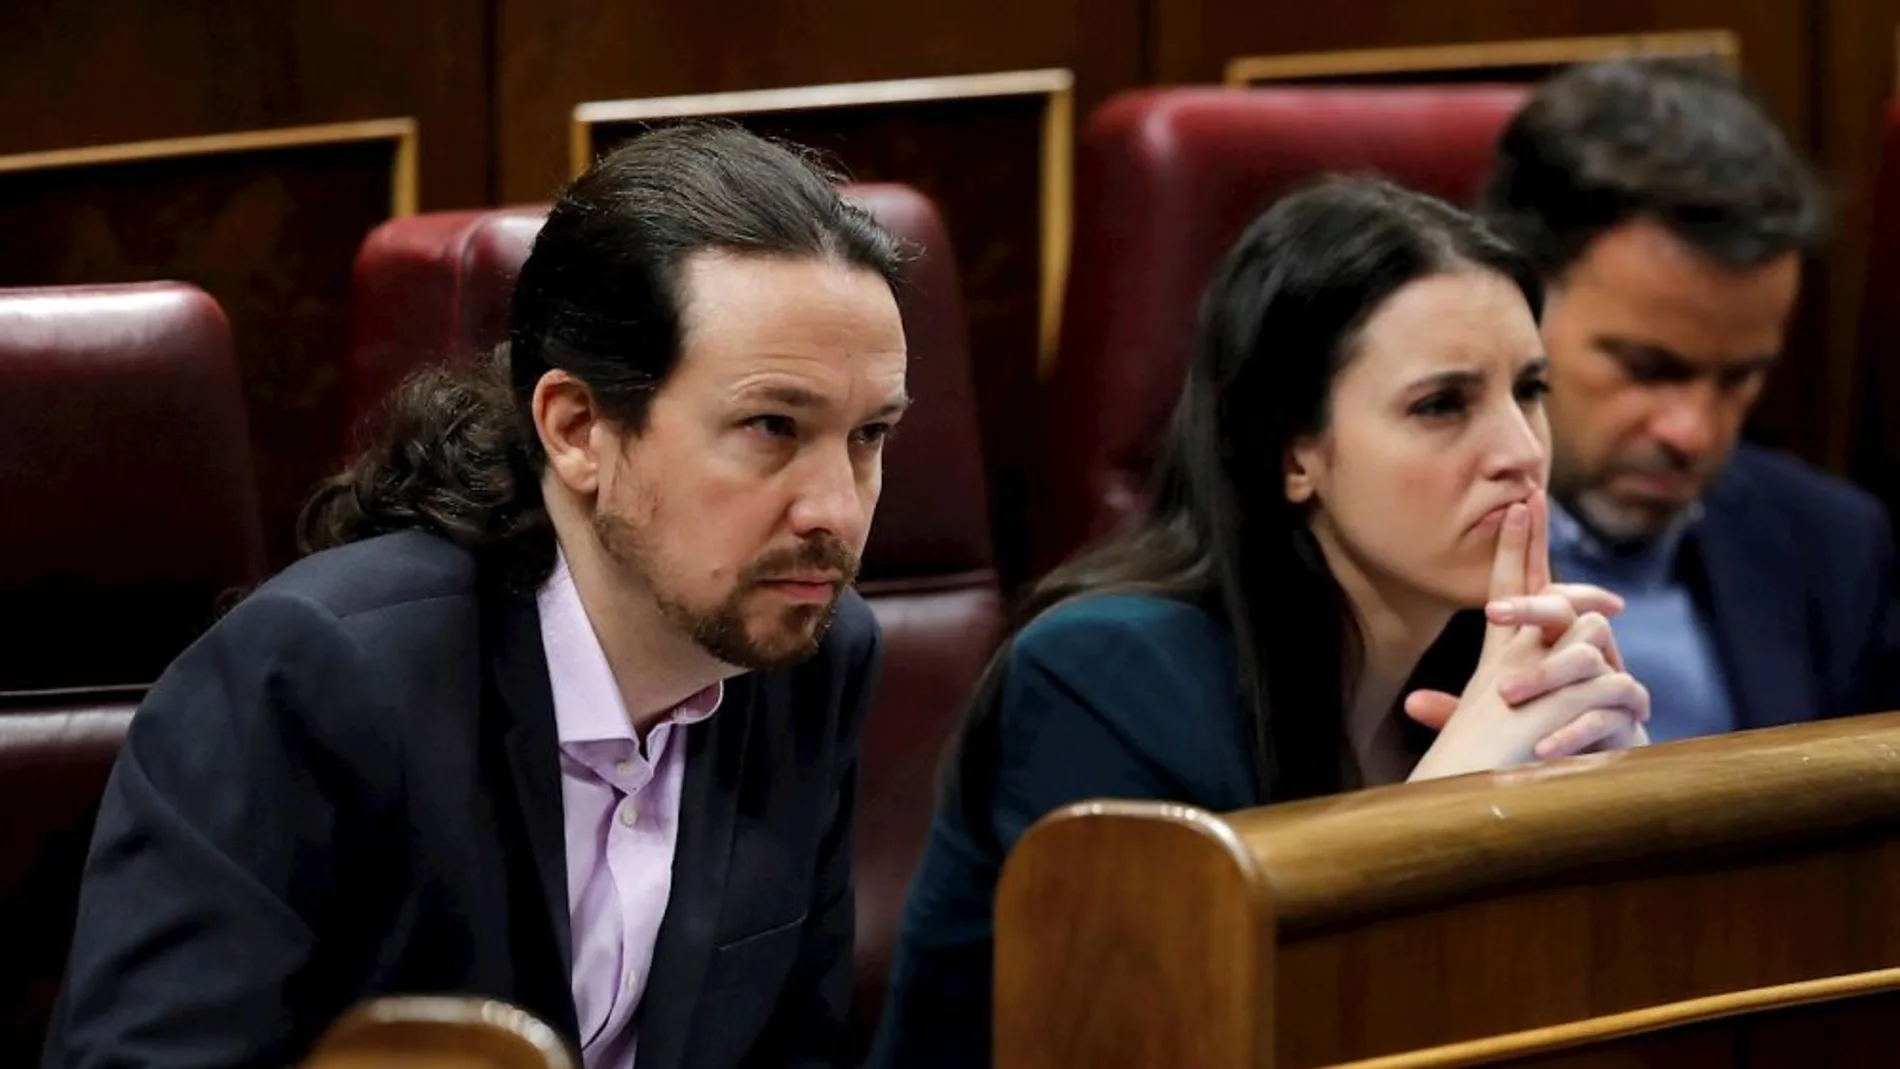 La exabogada de Podemos no pudo investigar el caso 'Niñera' porque fue despedida